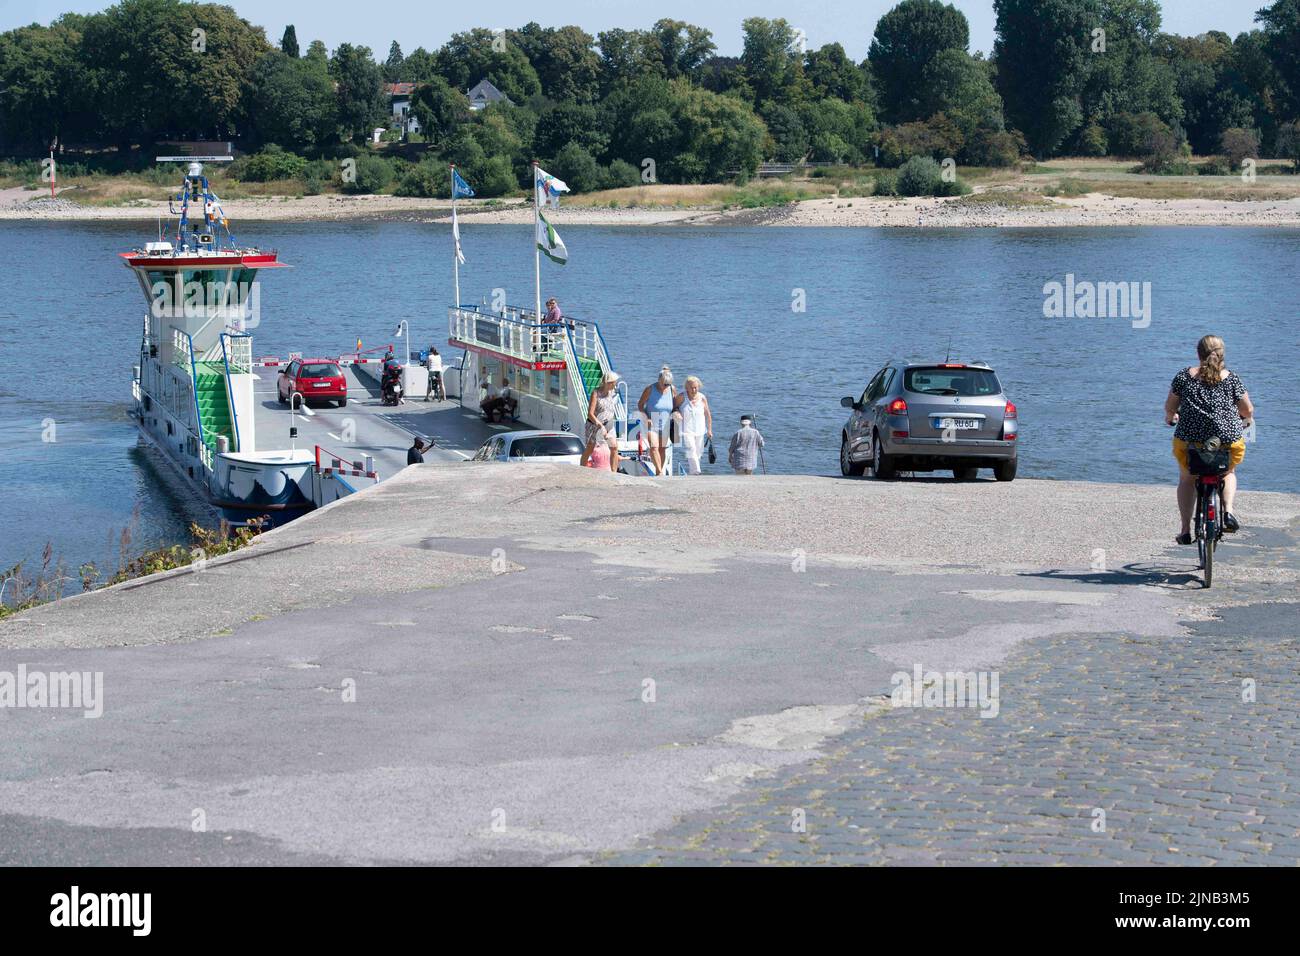 Les véhicules et les piétons entrent et conduisent sur le ferry du Rhin Michaela II, sur la rive gauche du Rhin près de Langst, le Rhin a un niveau d'eau bas, la banque a séché, l'eau basse dans le Rhin près de Langst/Kaiserswerth, au ferry du Rhin Kaiserswerth - Langst à Meerbusch, 10 08 2022, © Banque D'Images